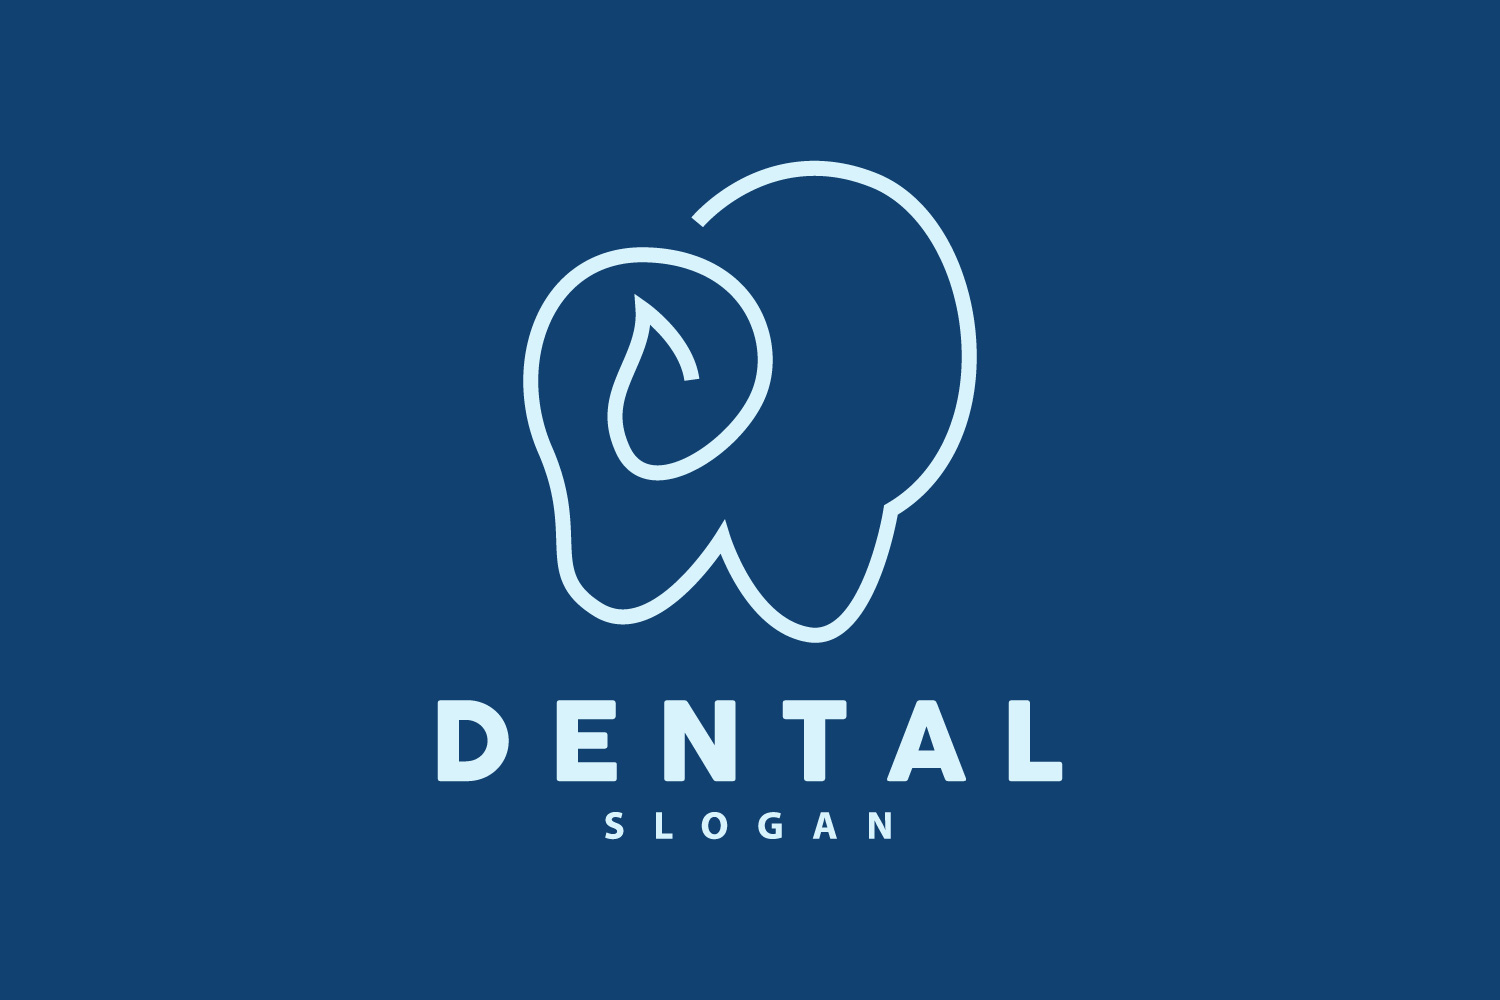 Tooth logo Dental Health Vector CareV4